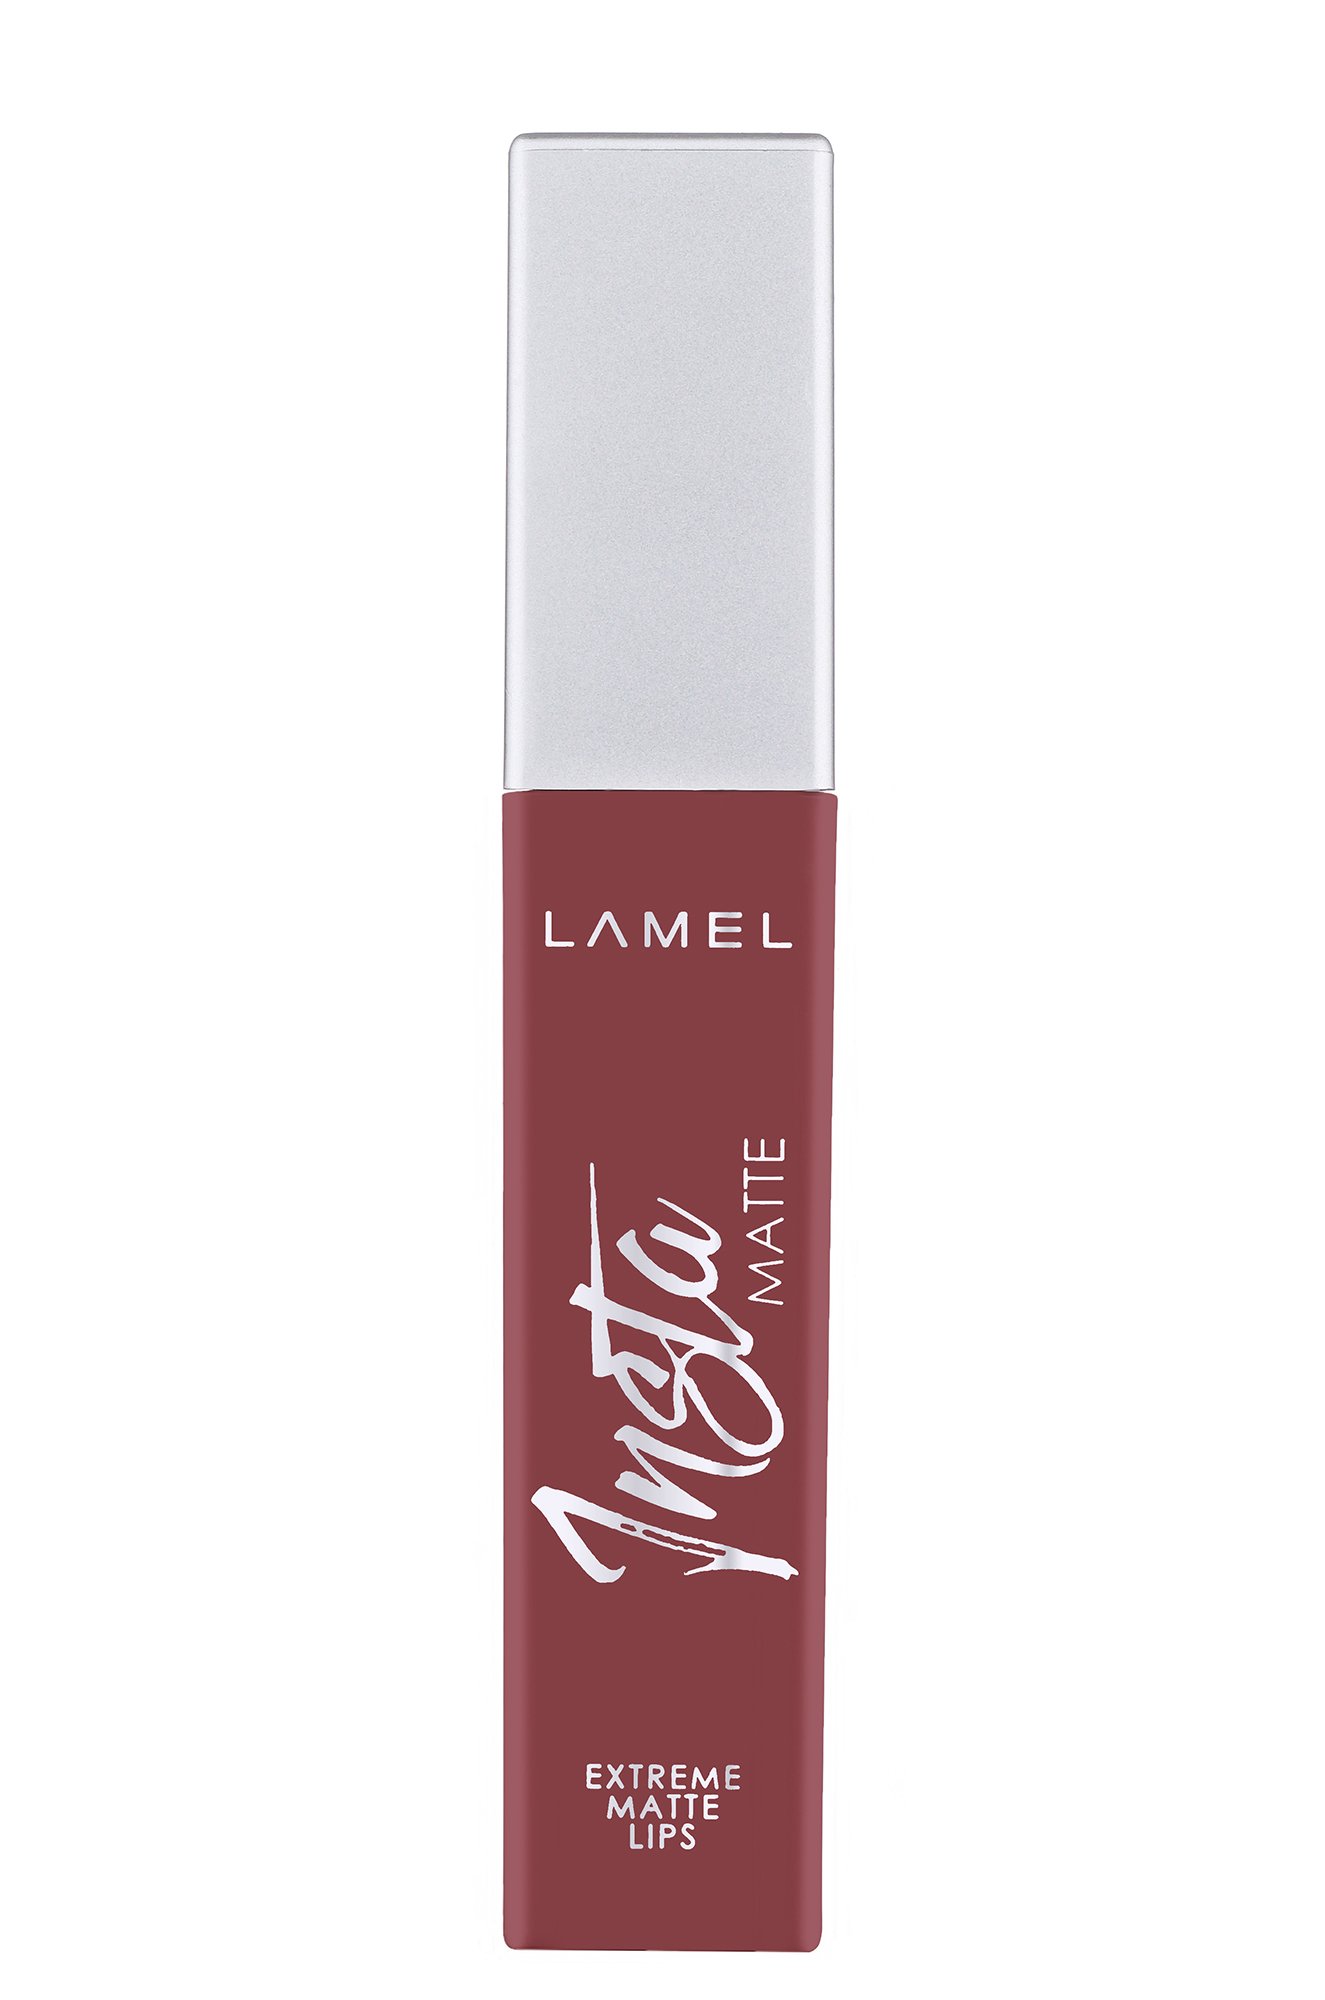 Помада жидкая матоваядля губ INSTA Matte Liquid Lipstick т.405 burgundy 6 мл LAMEL Professional